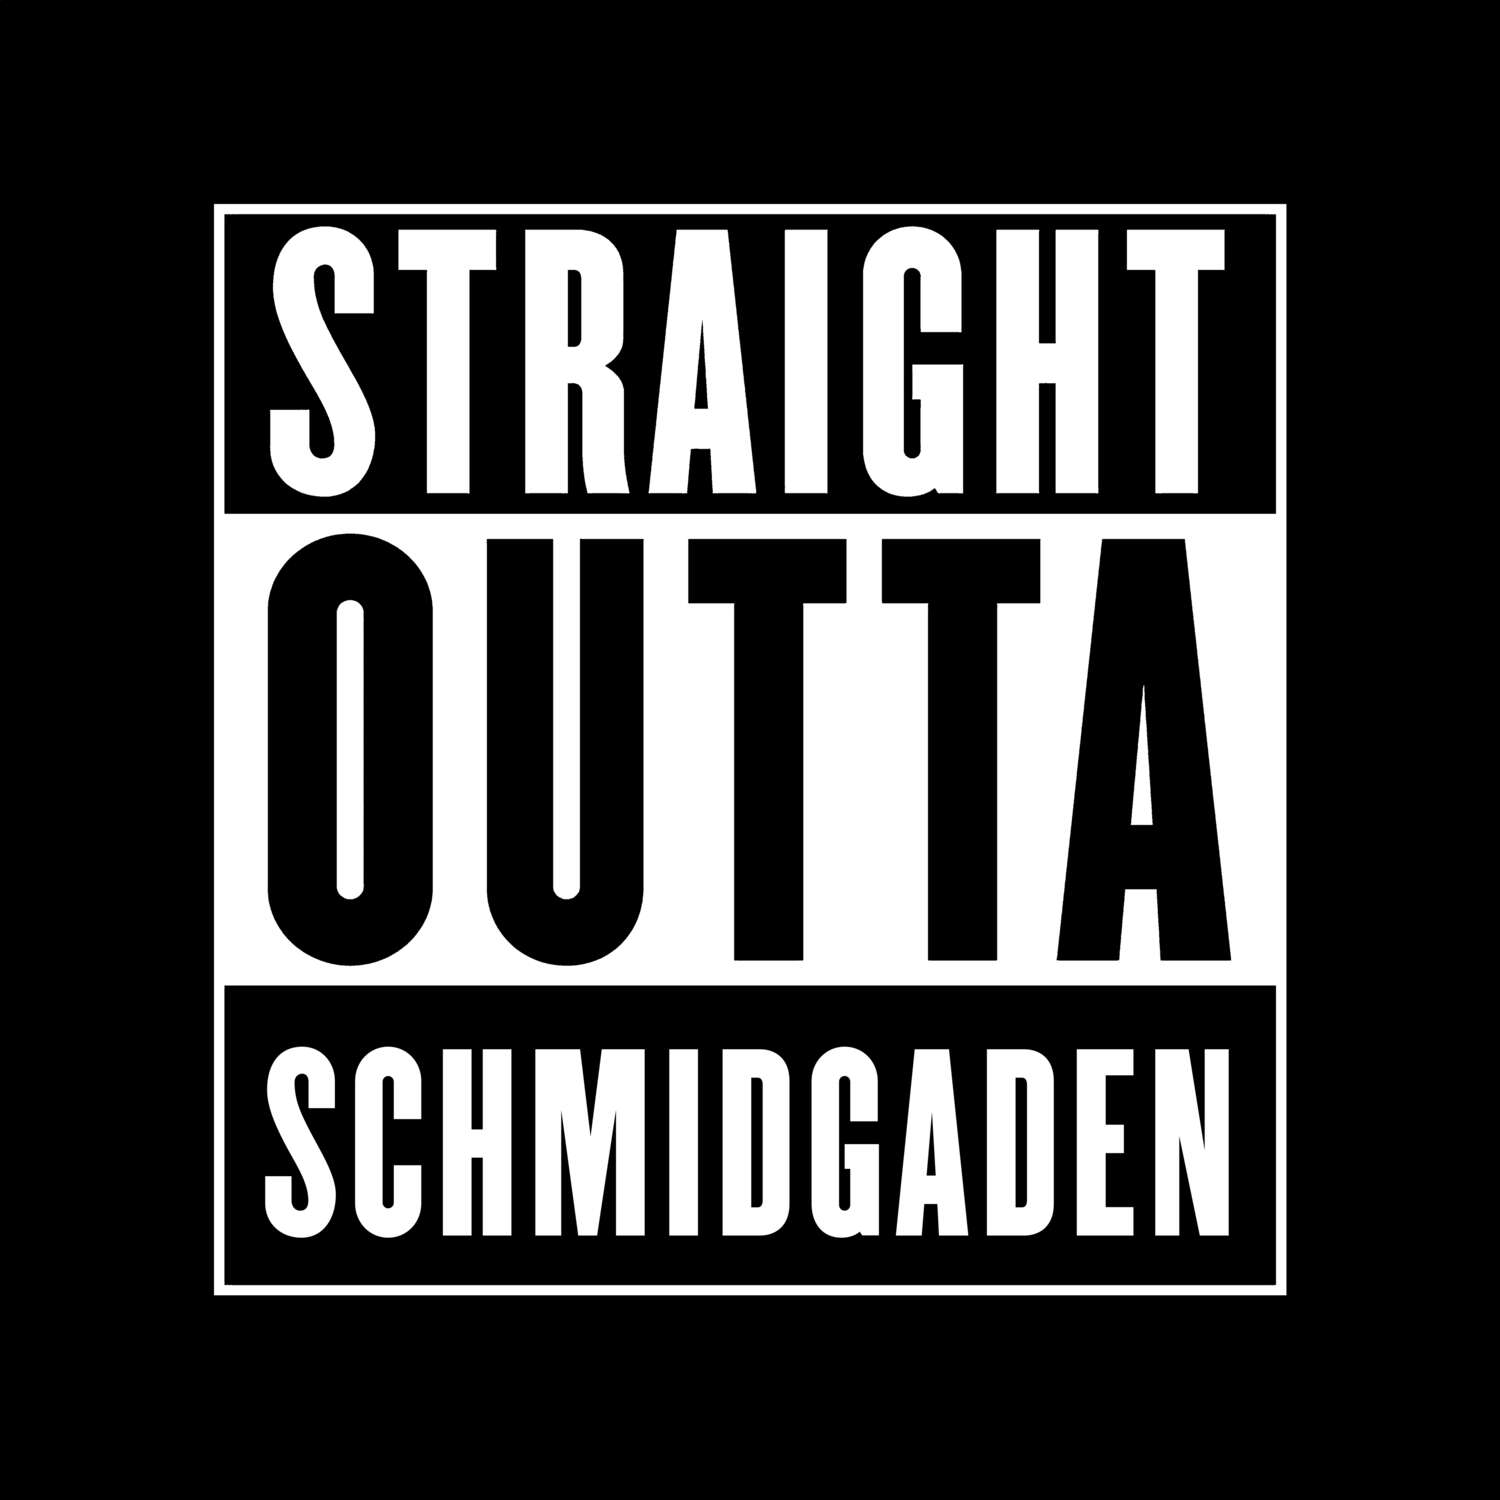 Schmidgaden T-Shirt »Straight Outta«